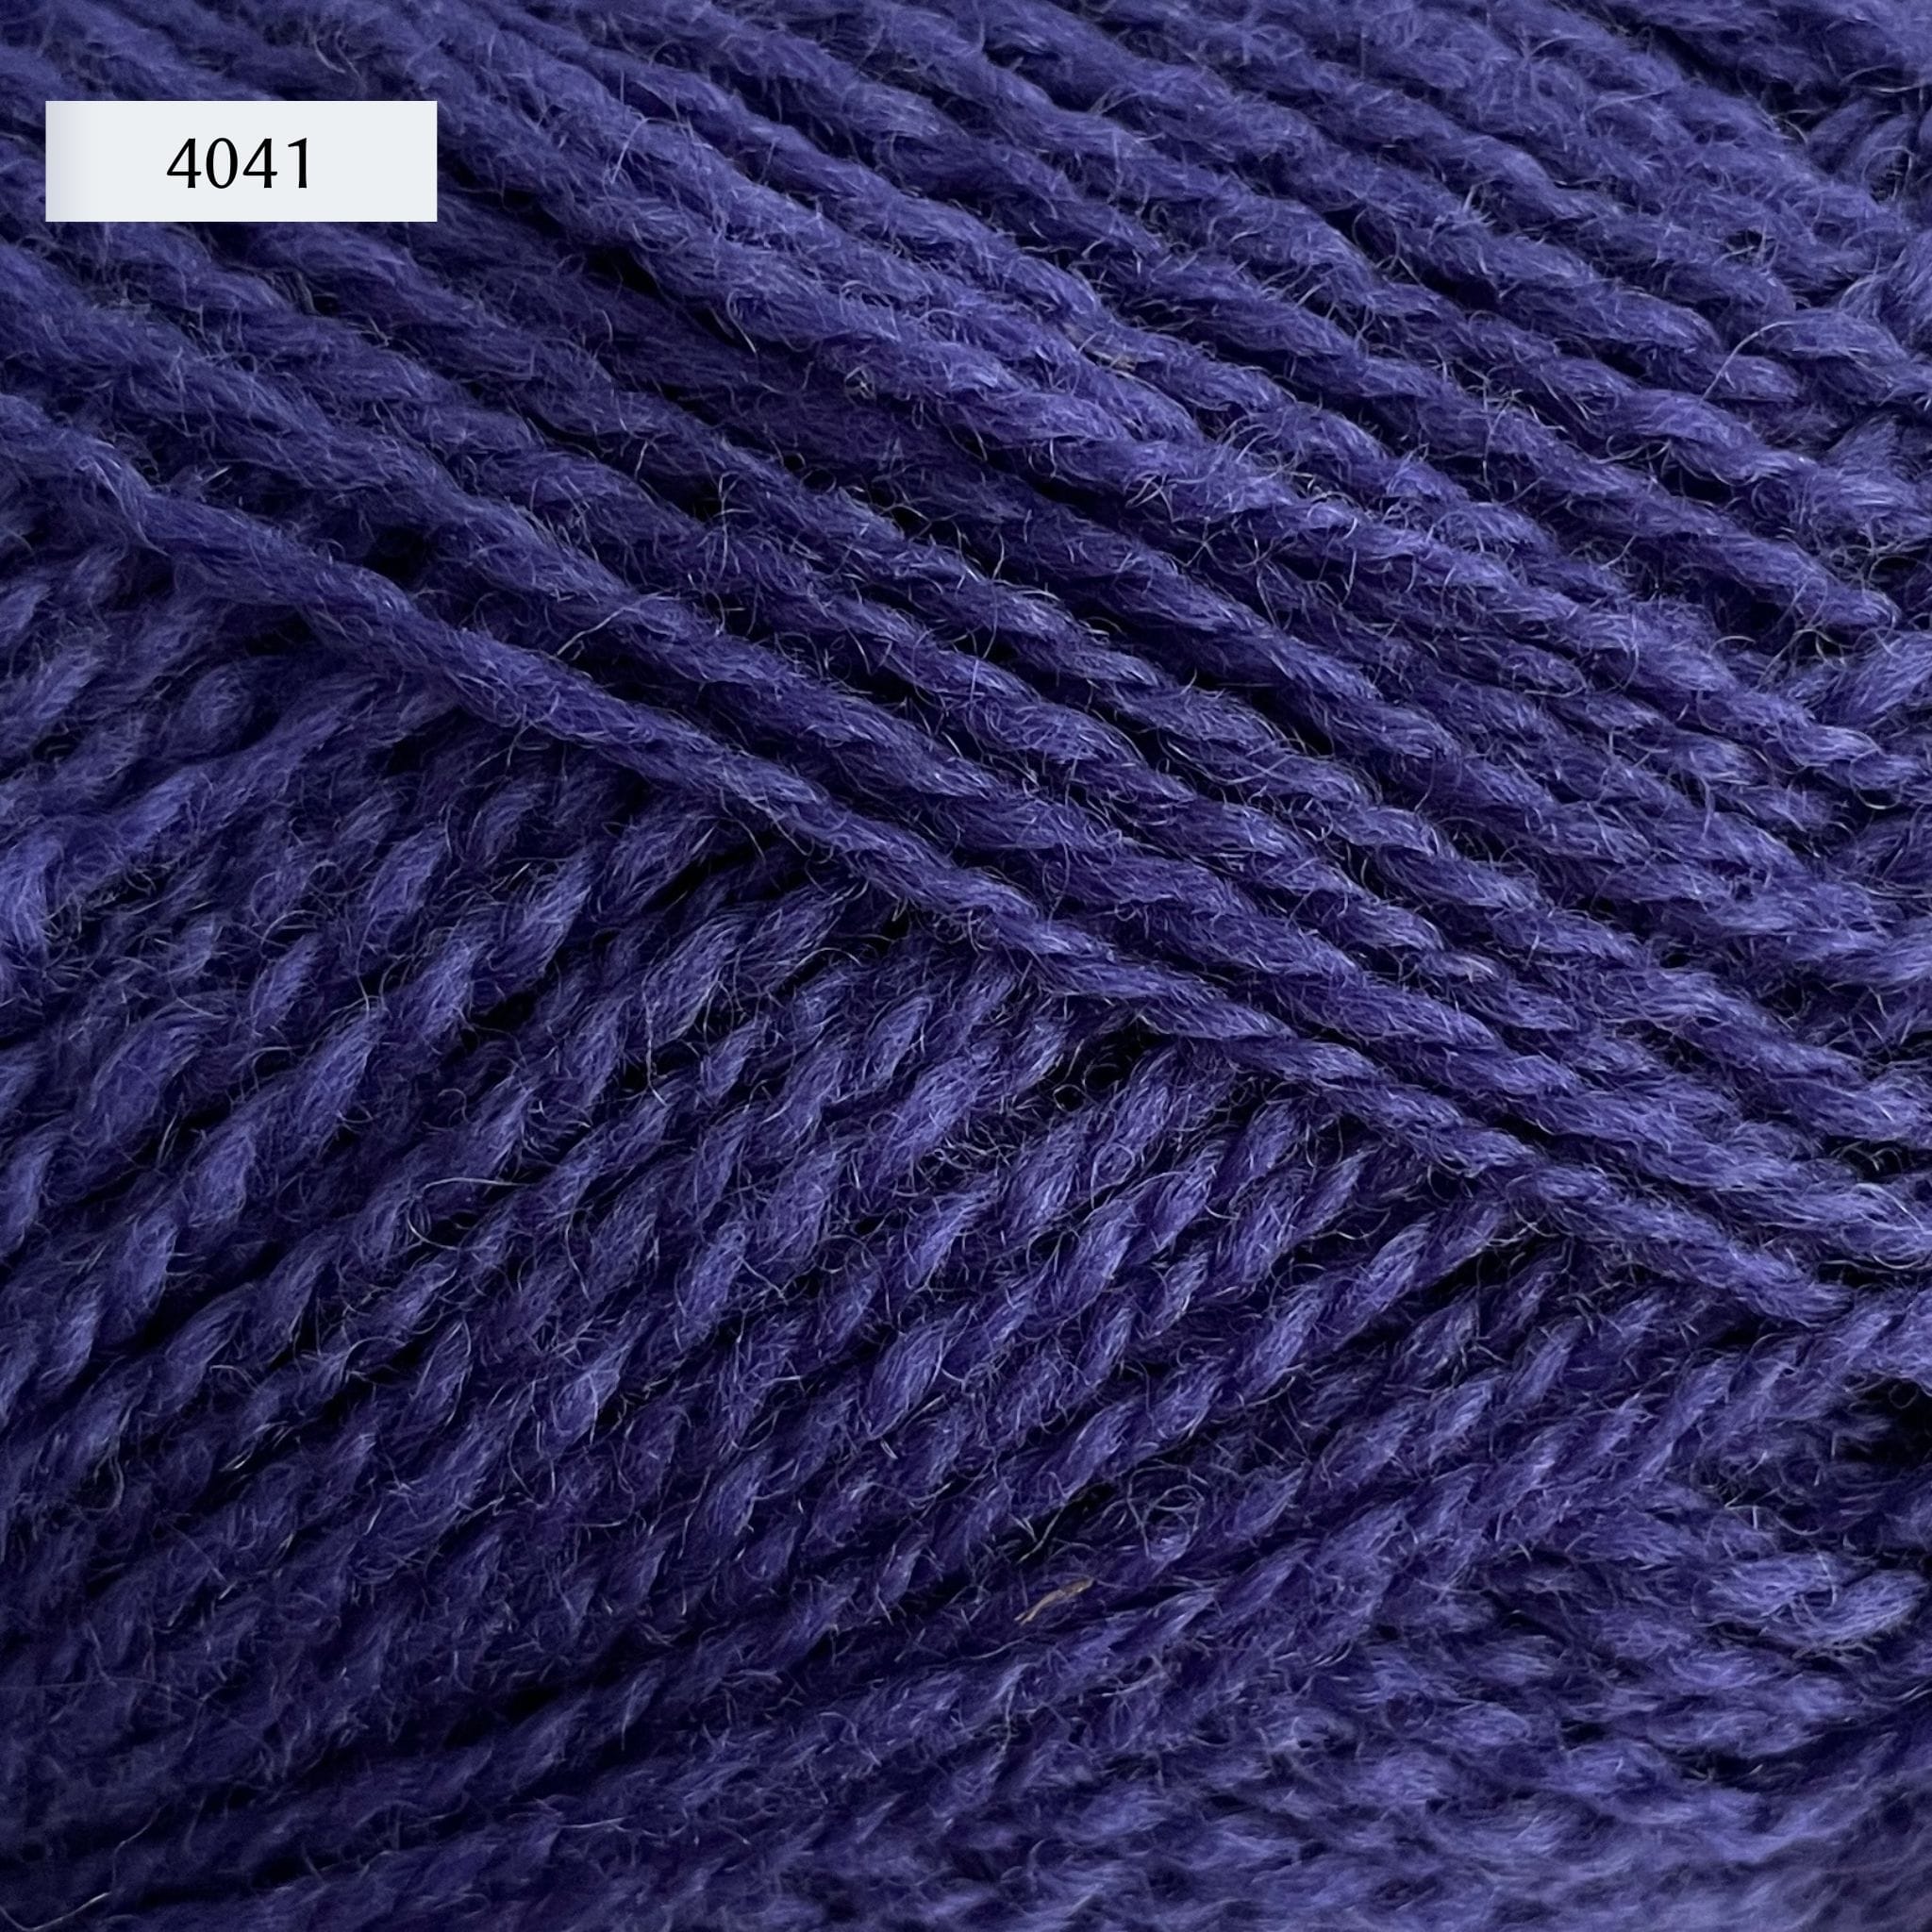 Rauma Finullgarn, a fingering/sport weight yarn, in color 4041, a deep royal purple